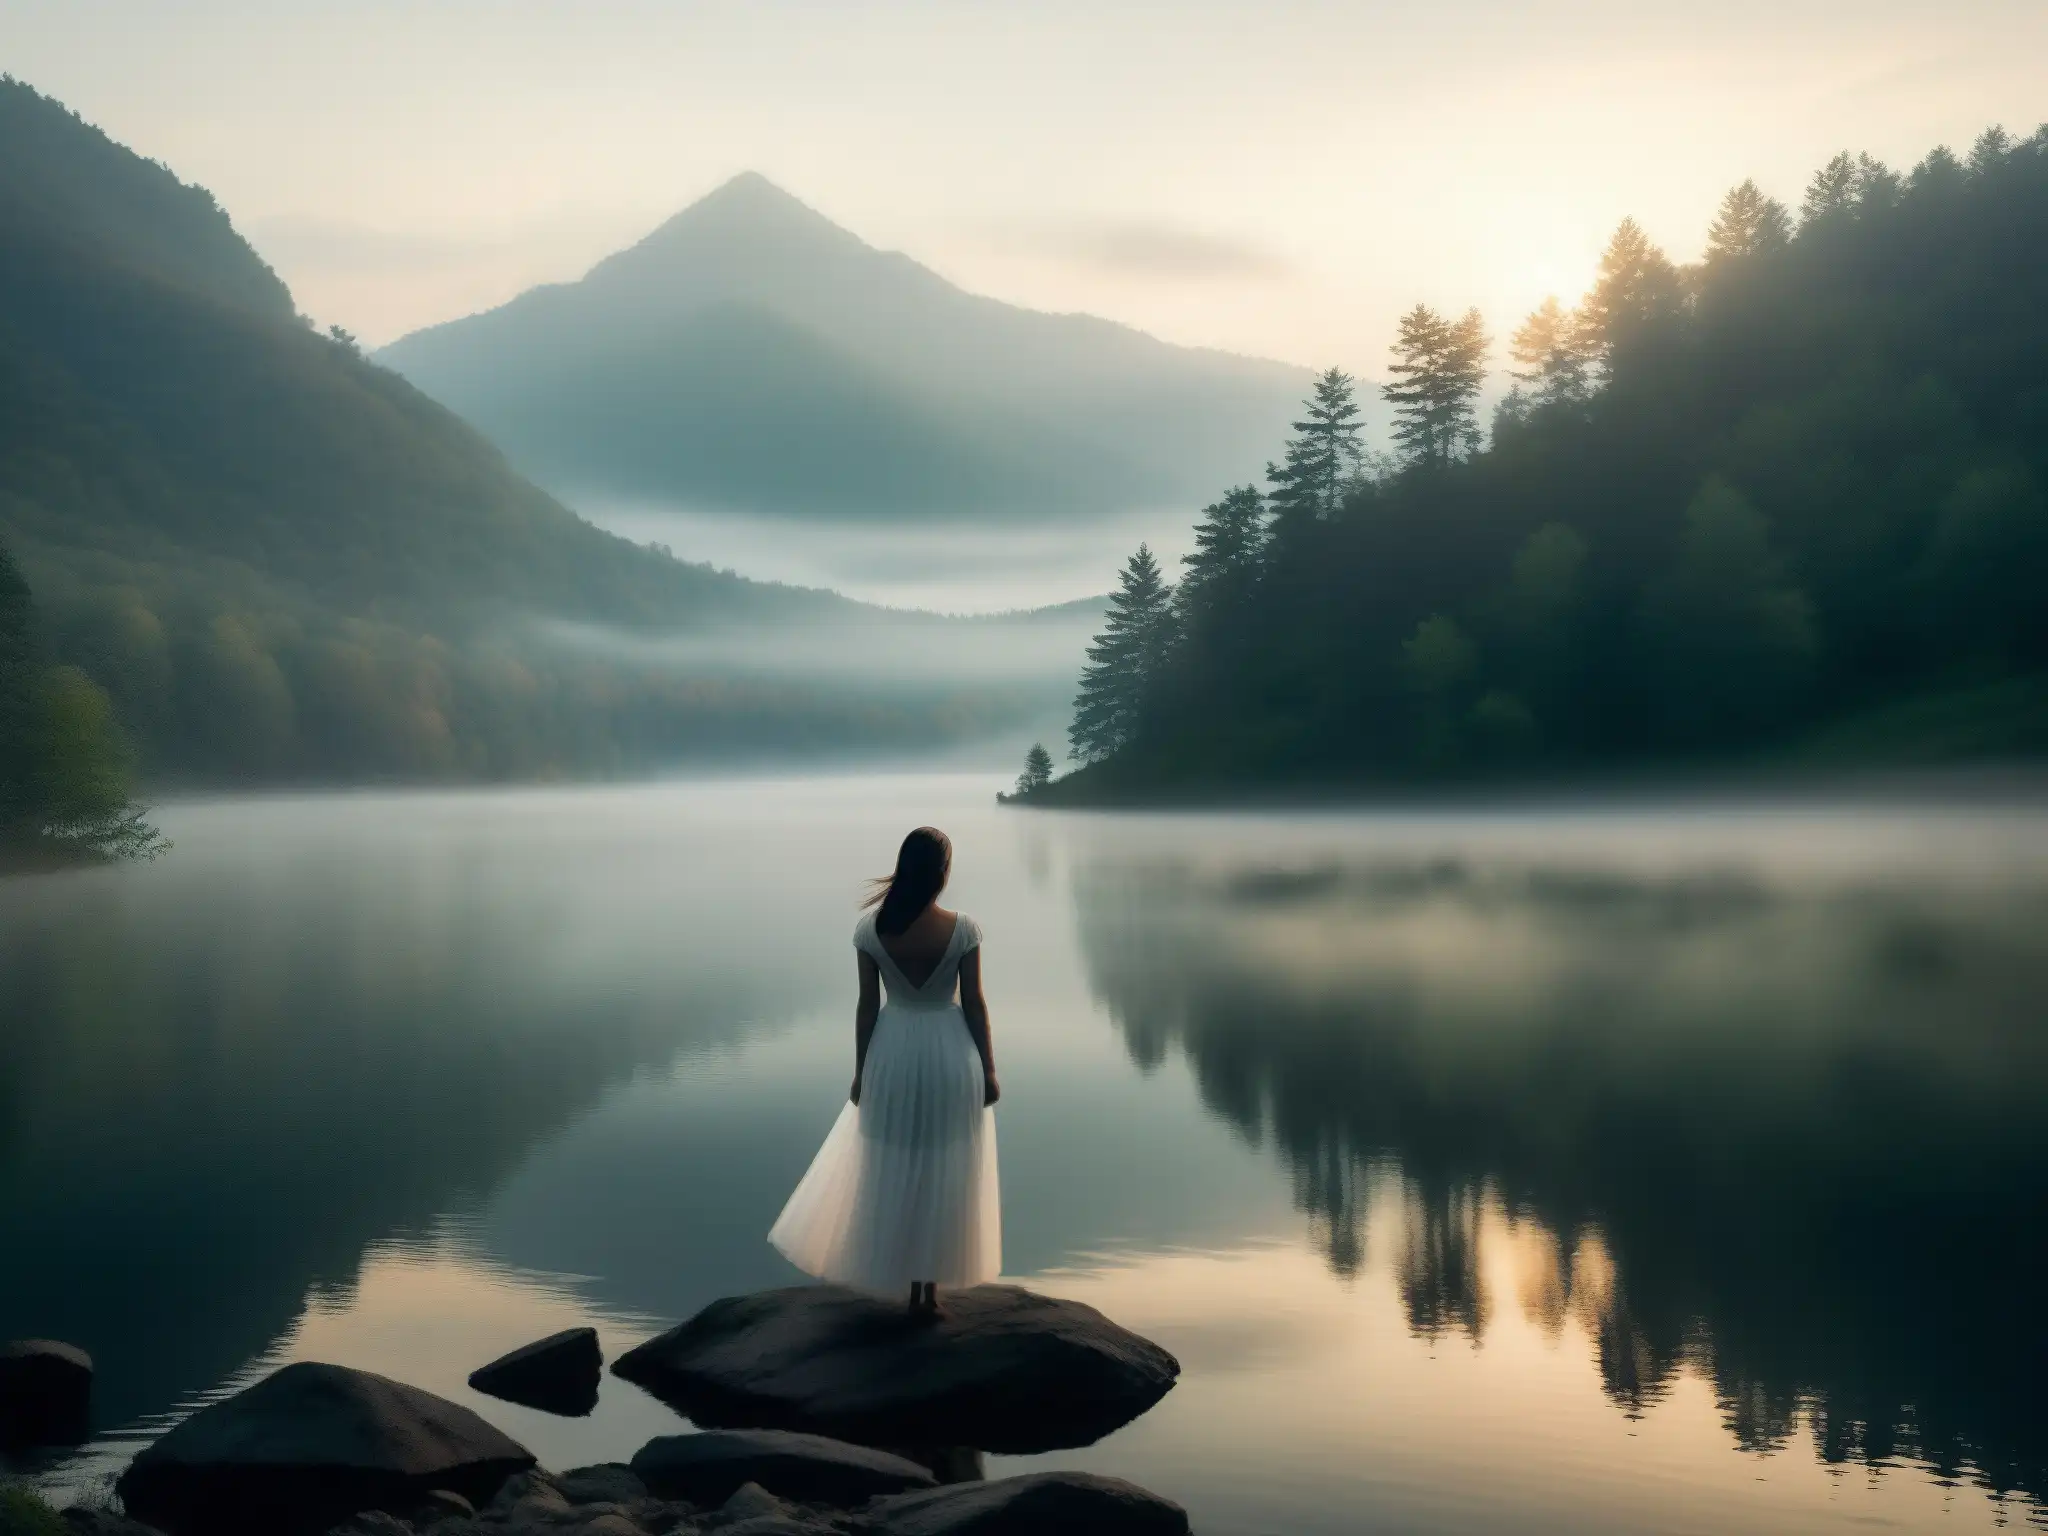 Una misteriosa figura en vestido blanco se funde con la neblina en los montes de los Apalaches, evocando la leyenda de la mujer blanca Appalachia